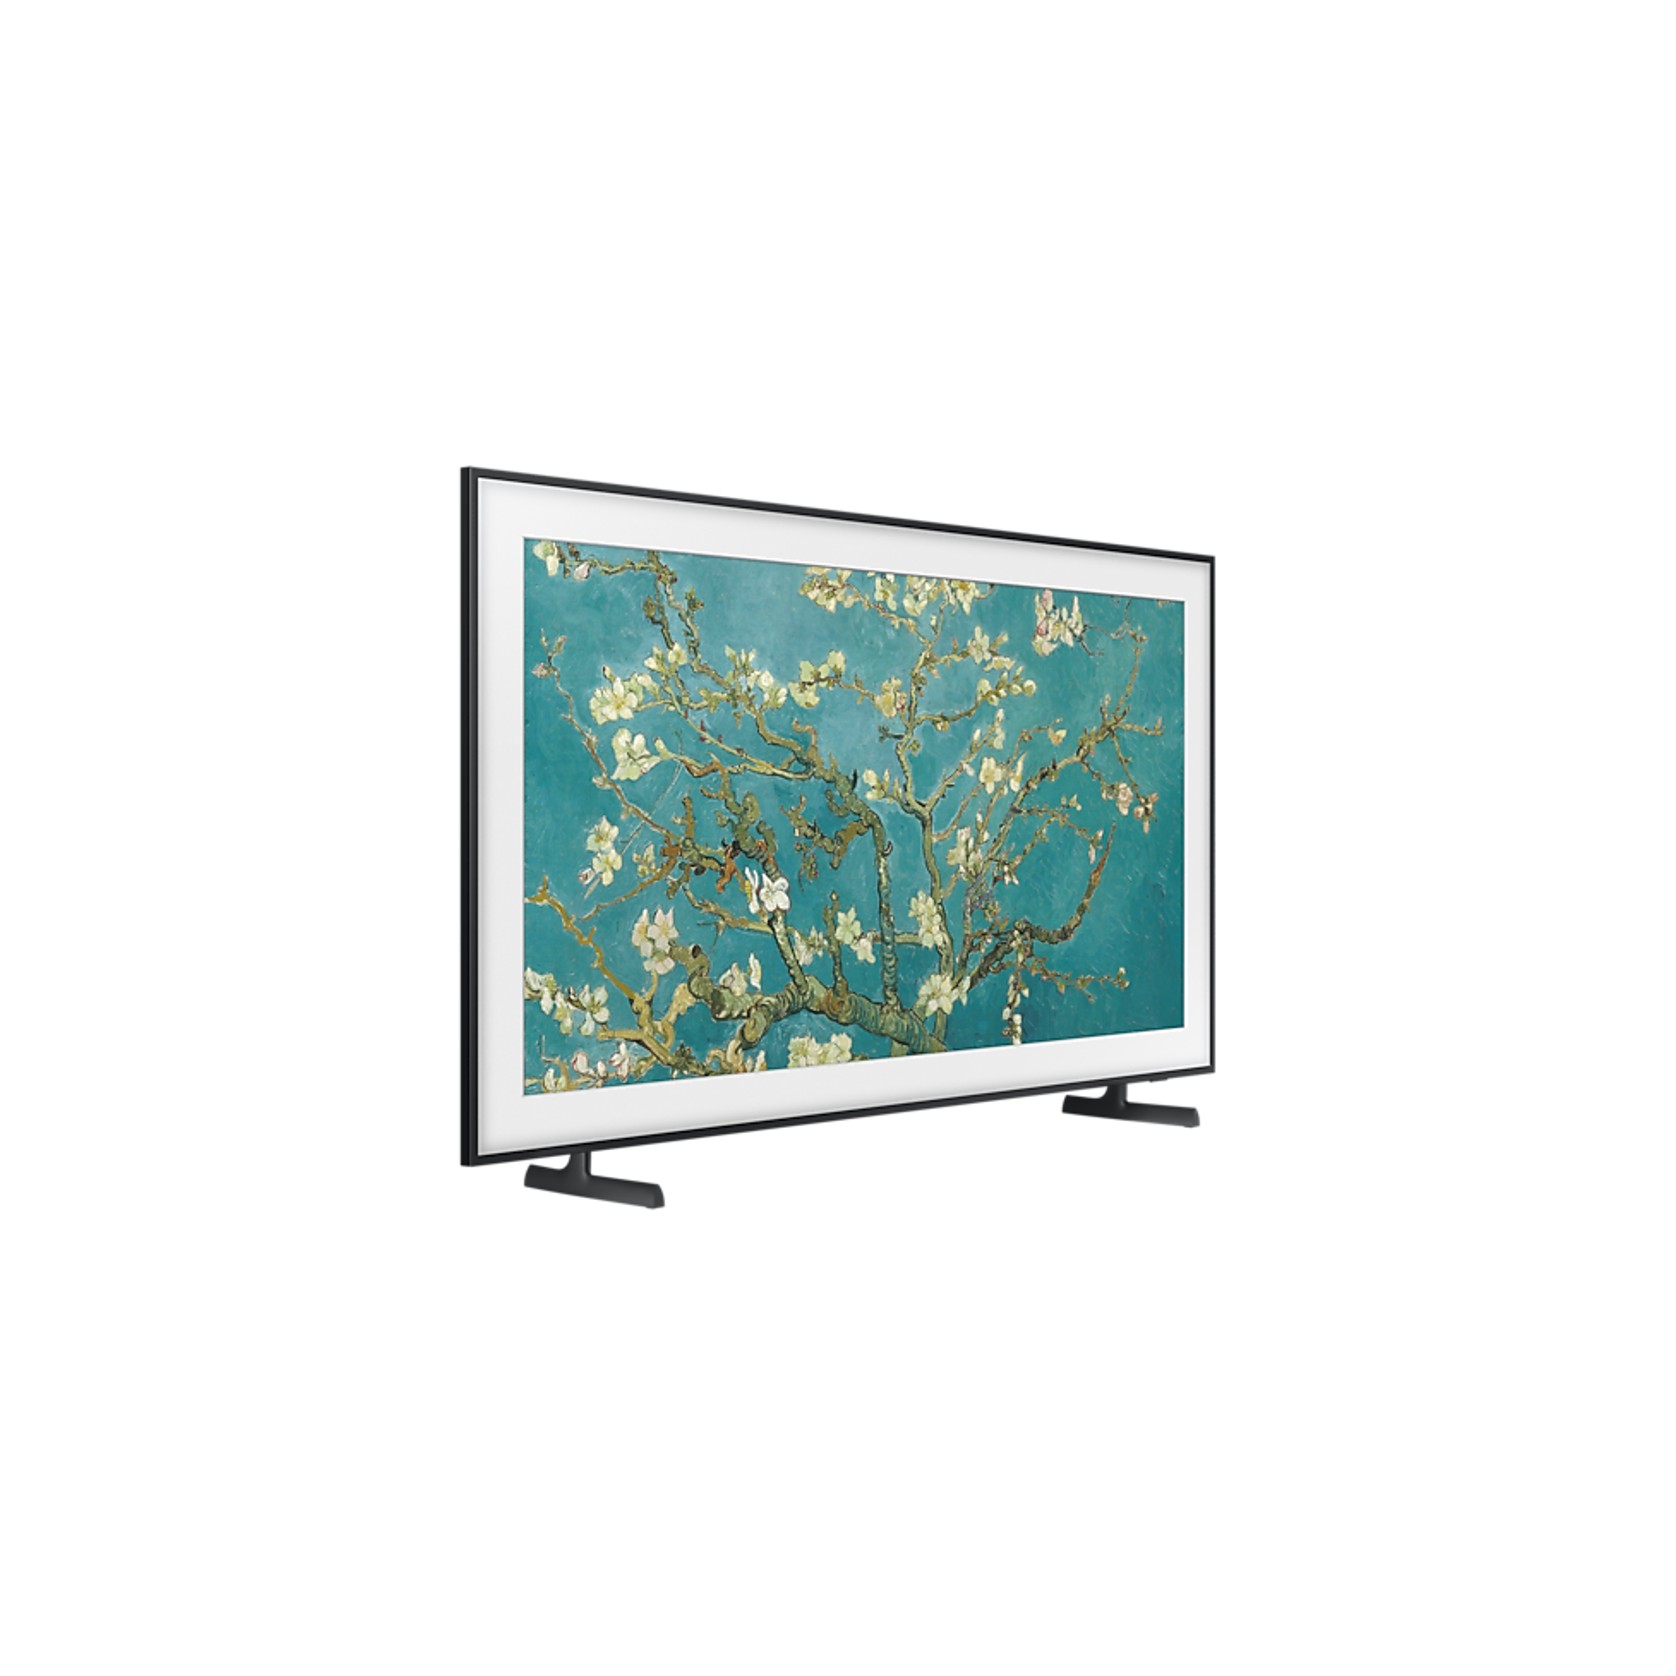 Samsung 50 Inch Frame 4K Smart TV gallery detail image